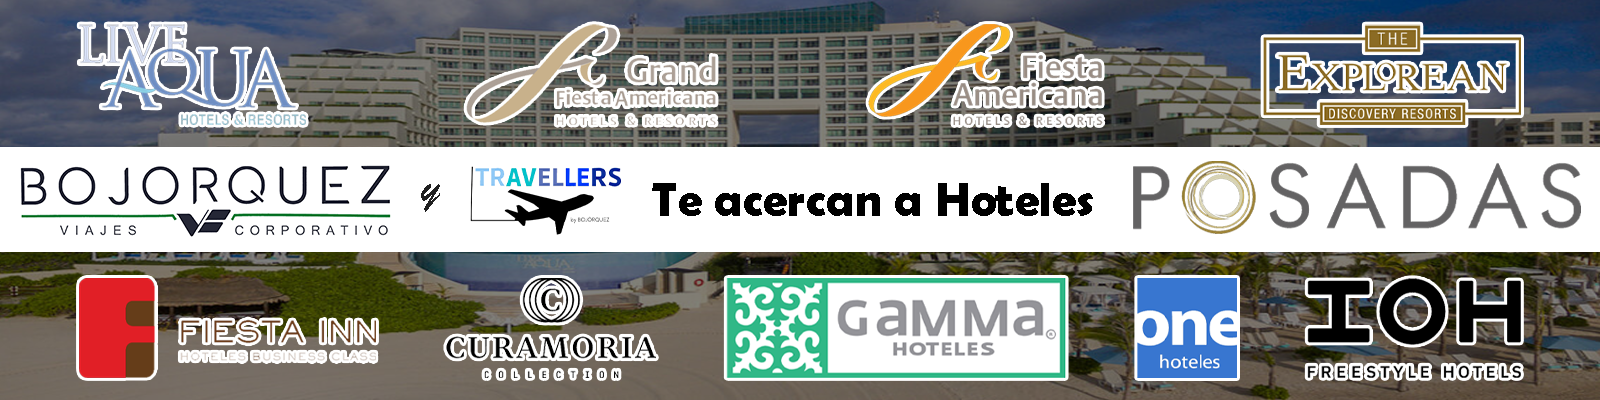 Hoteles Posadas en convenio con Viajes Bojorquez - Travellers